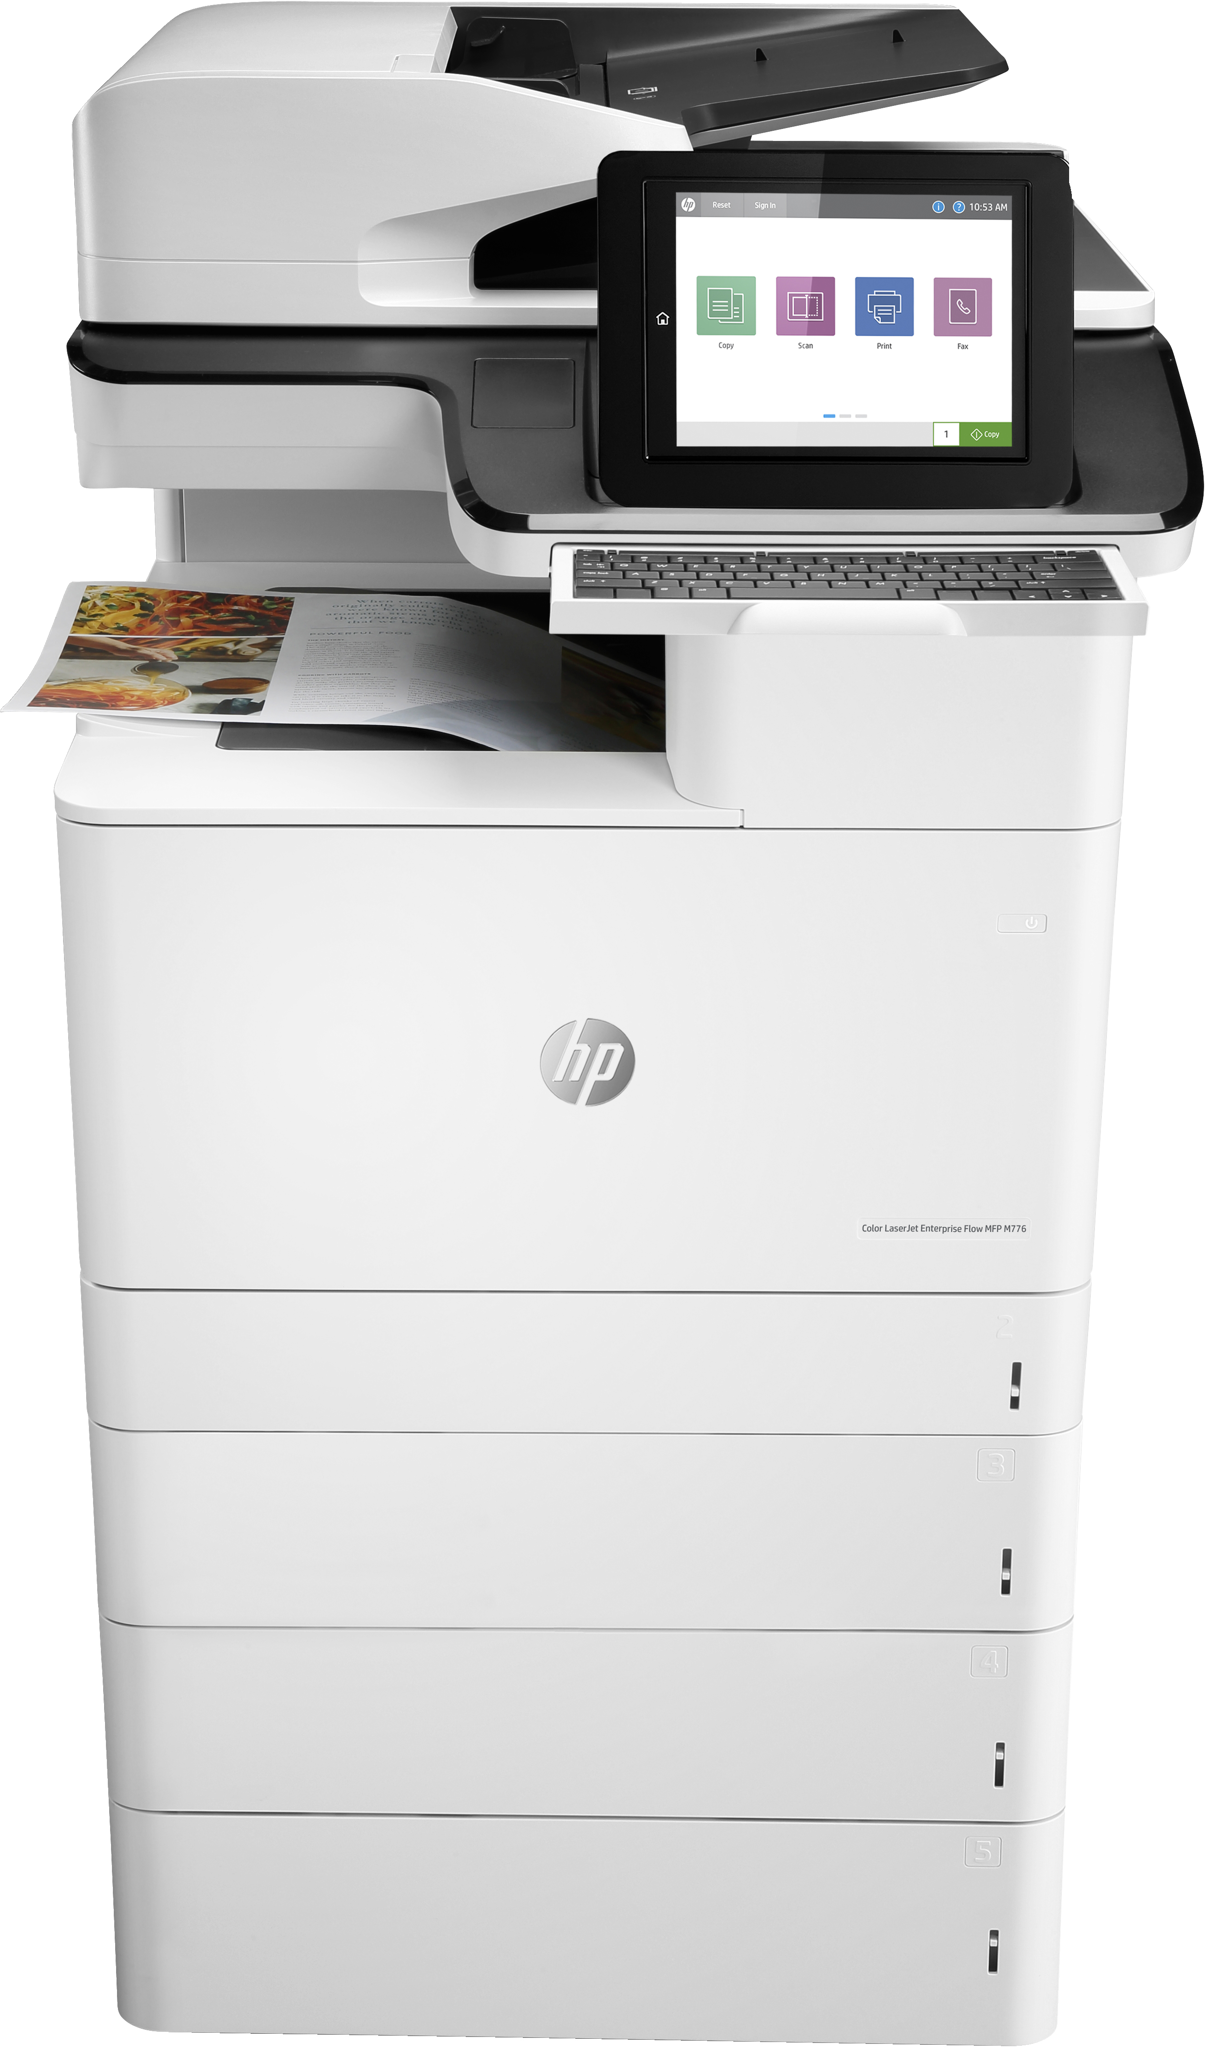 Bild von HP Color LaserJet Enterprise Flow MFP M776z - Drucken - Kopieren - Scannen und Faxen - Drucken über den USB-Anschluss vorn - Laser - Farbdruck - 1200 x 1200 DPI - A3 - Direktdruck - Schwarz - Weiß